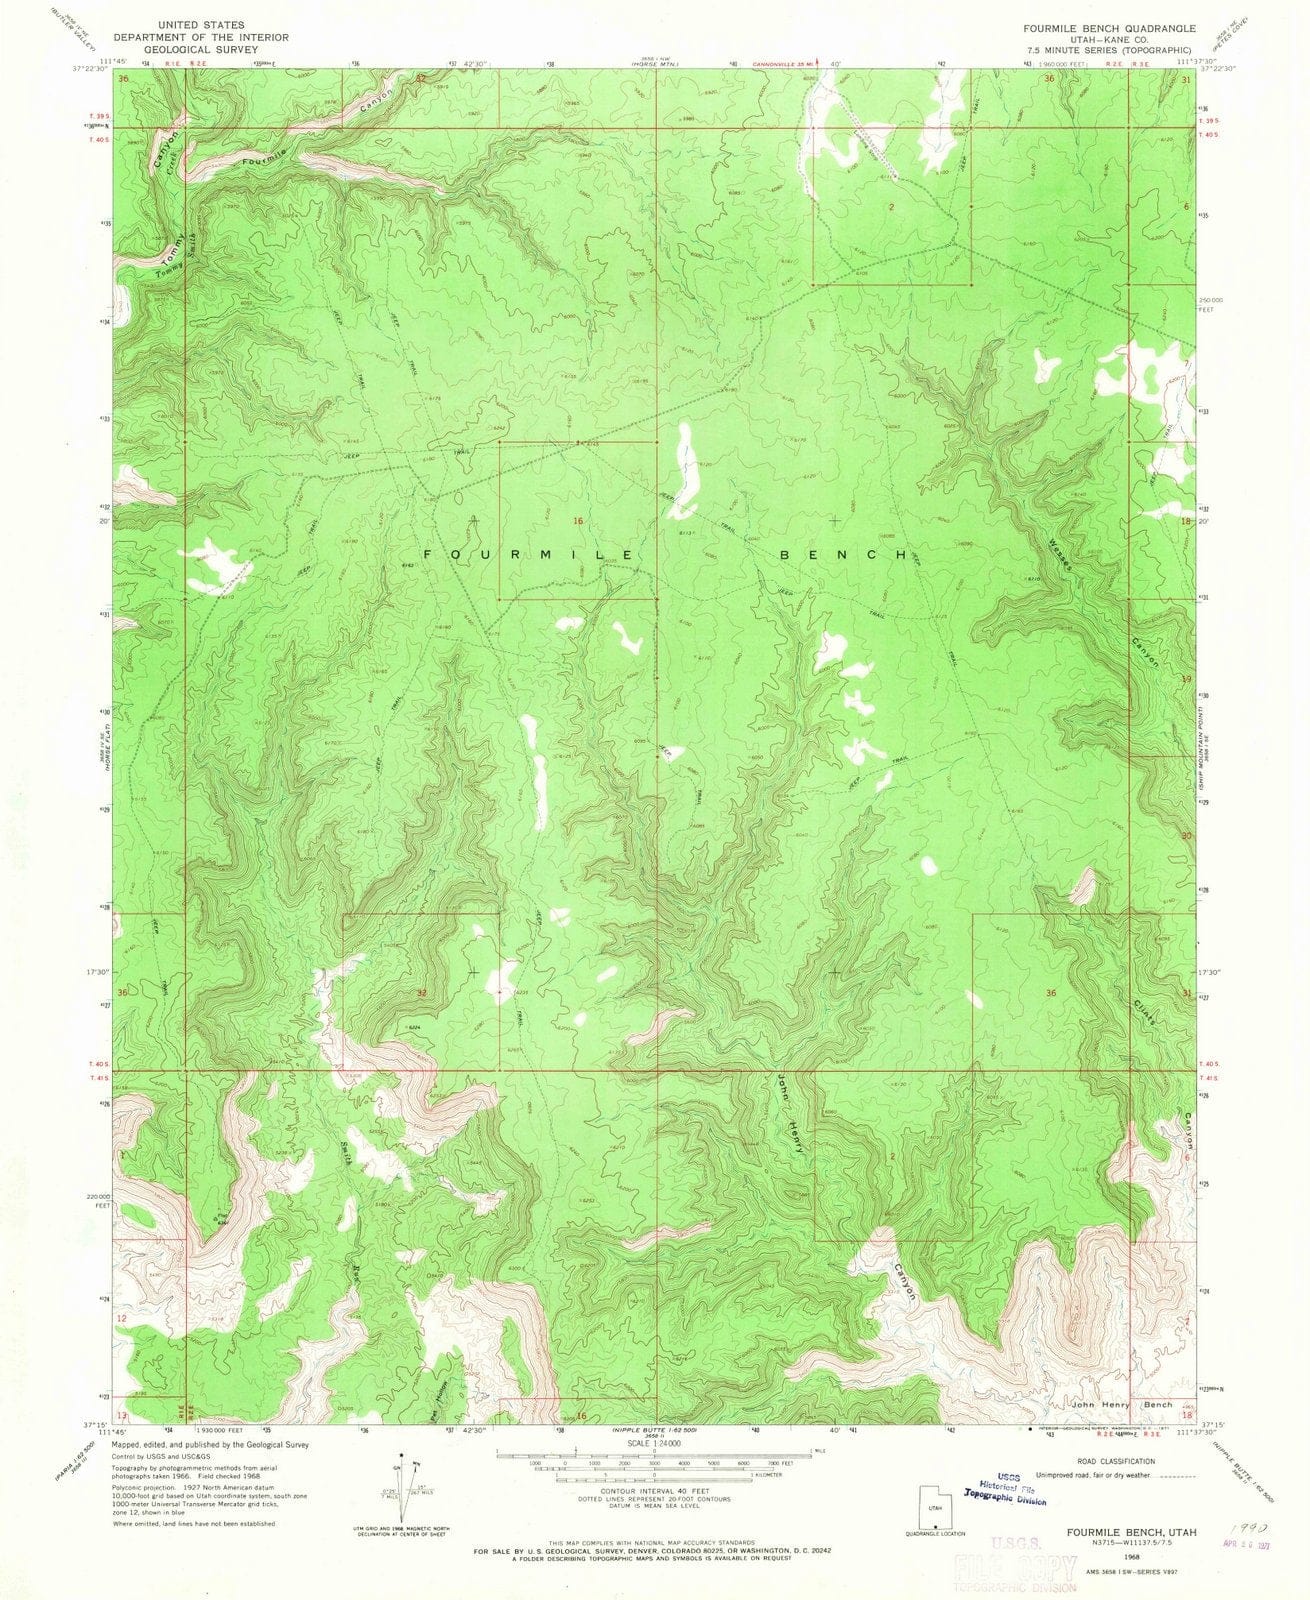 1968 Fourmile Bench, UT - Utah - USGS Topographic Map